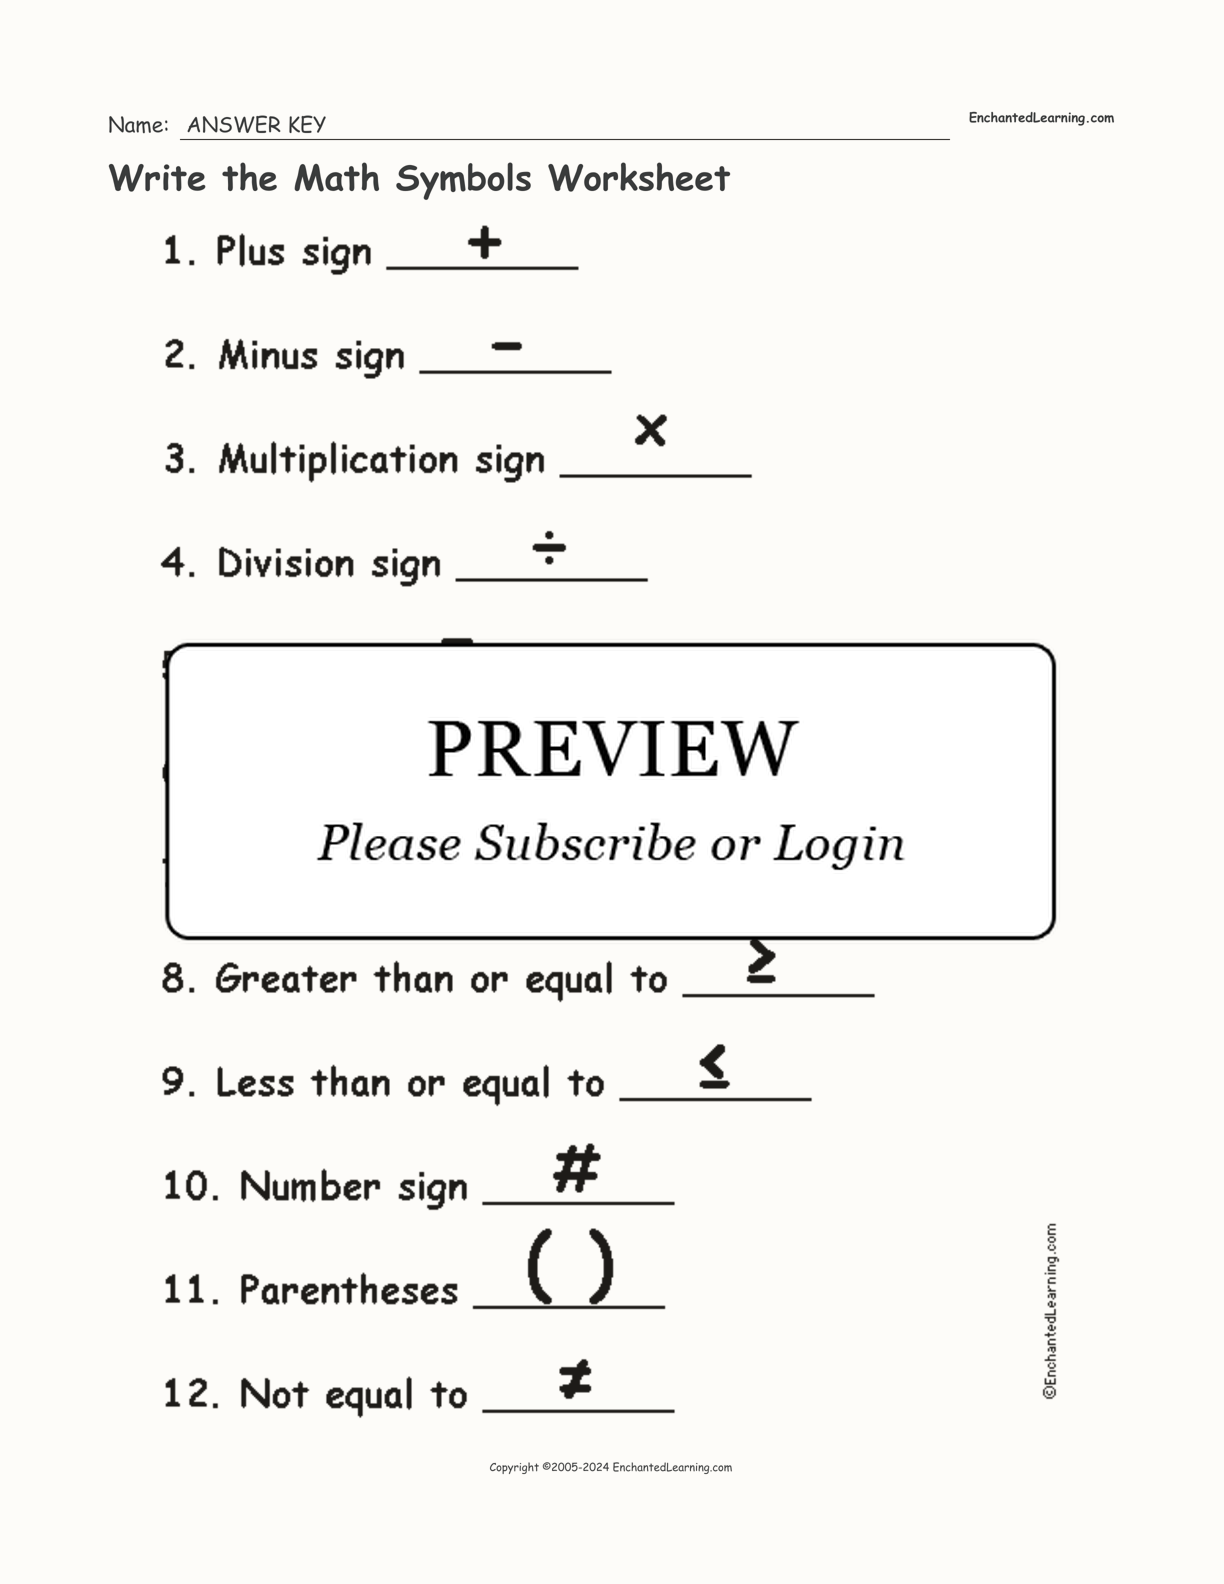 write-the-math-symbols-worksheet-enchanted-learning